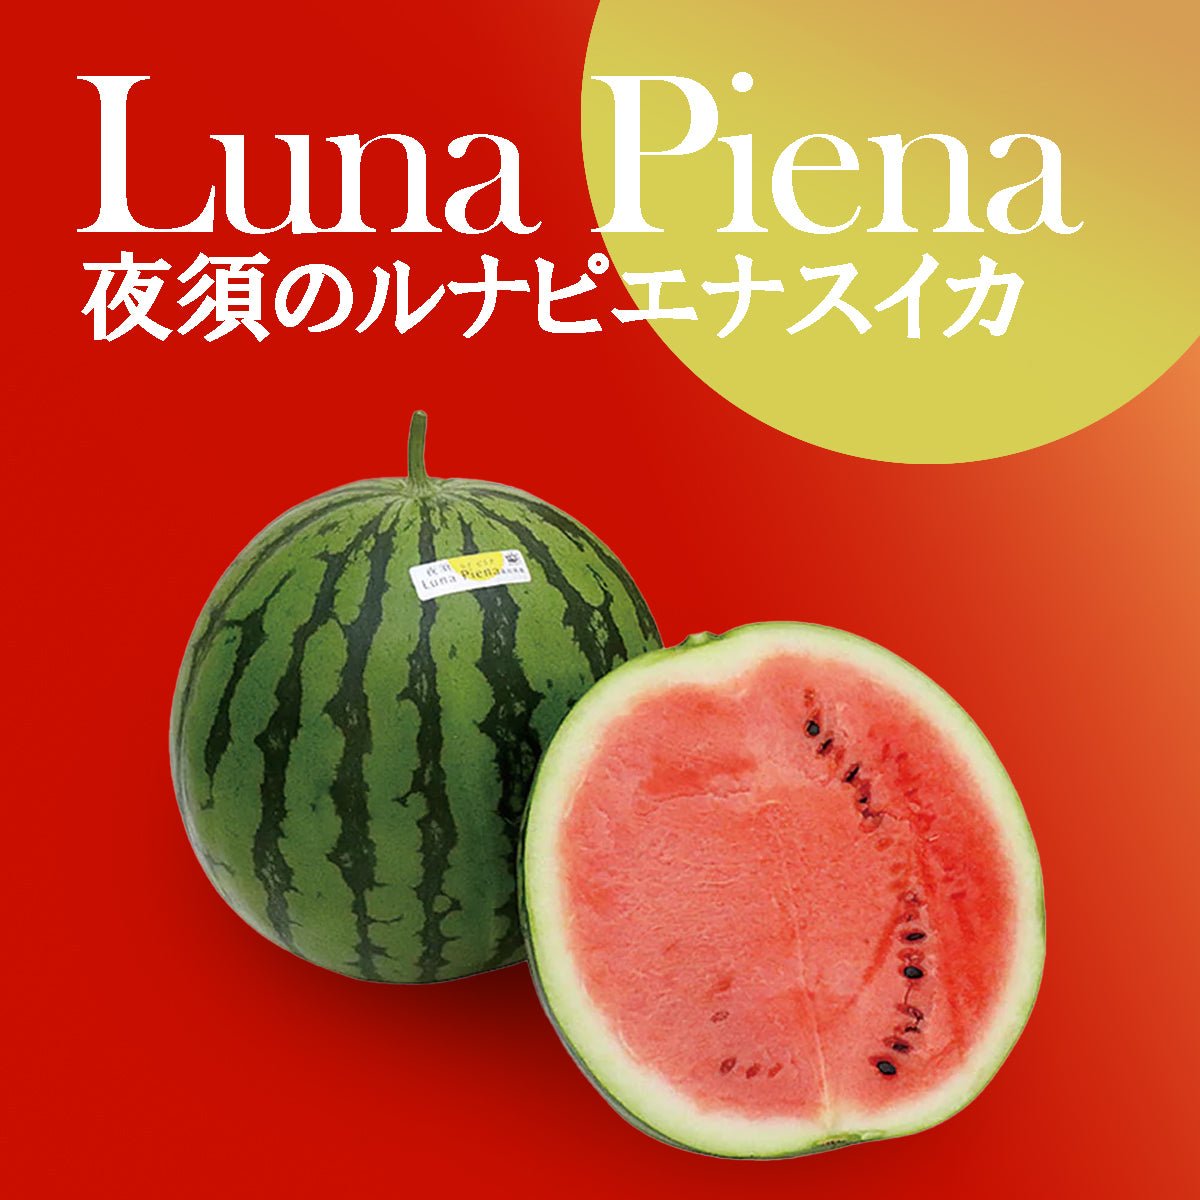 Luna Piena Premium Watermelon - Tokyo Fresh Direct